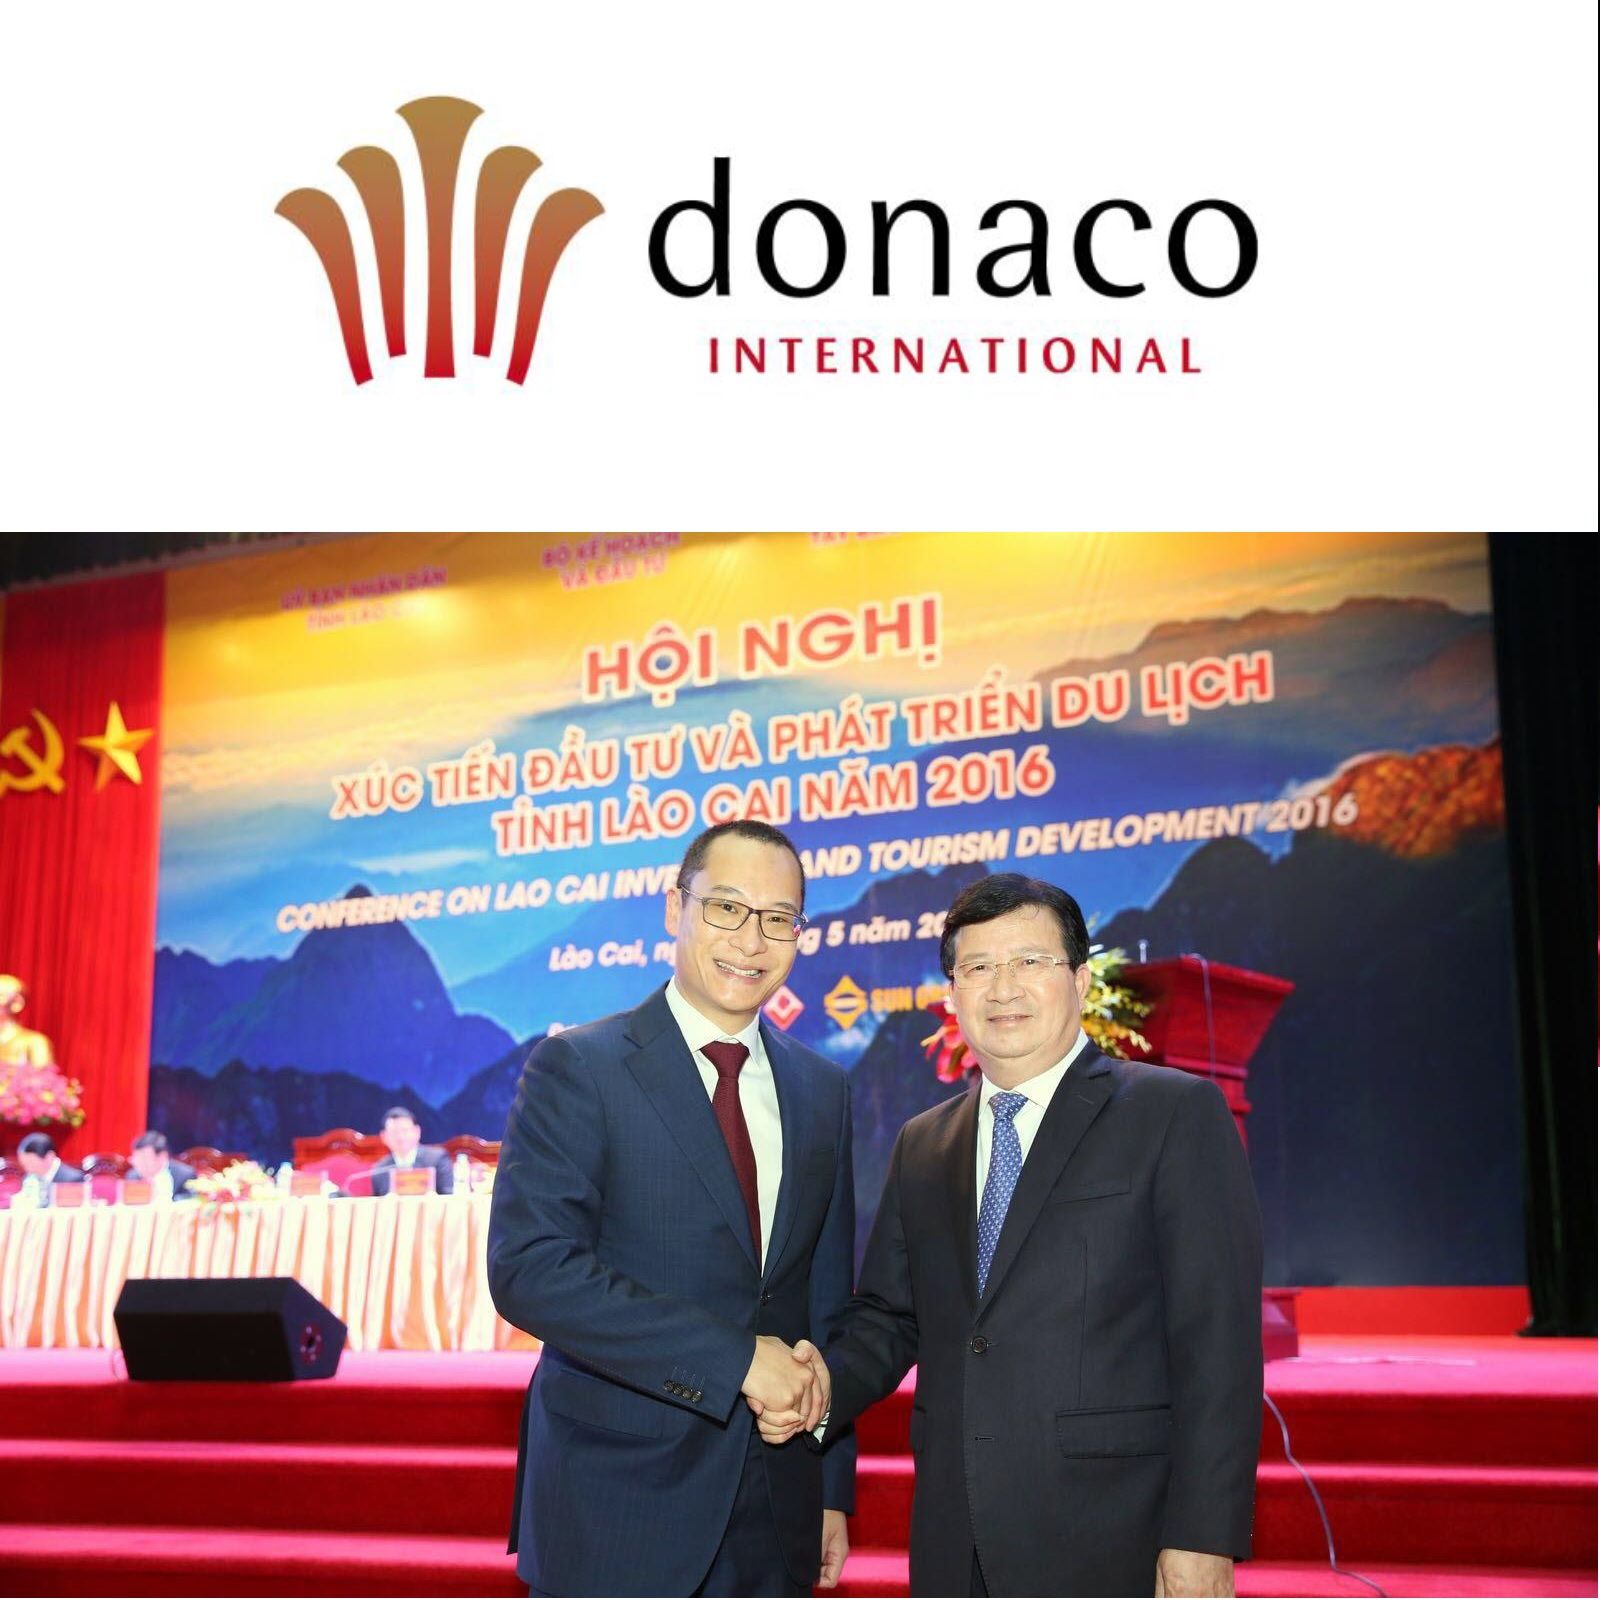 Managing Director Joey Lim a Keynote Speaker at Major Vietnam Tourism Conference